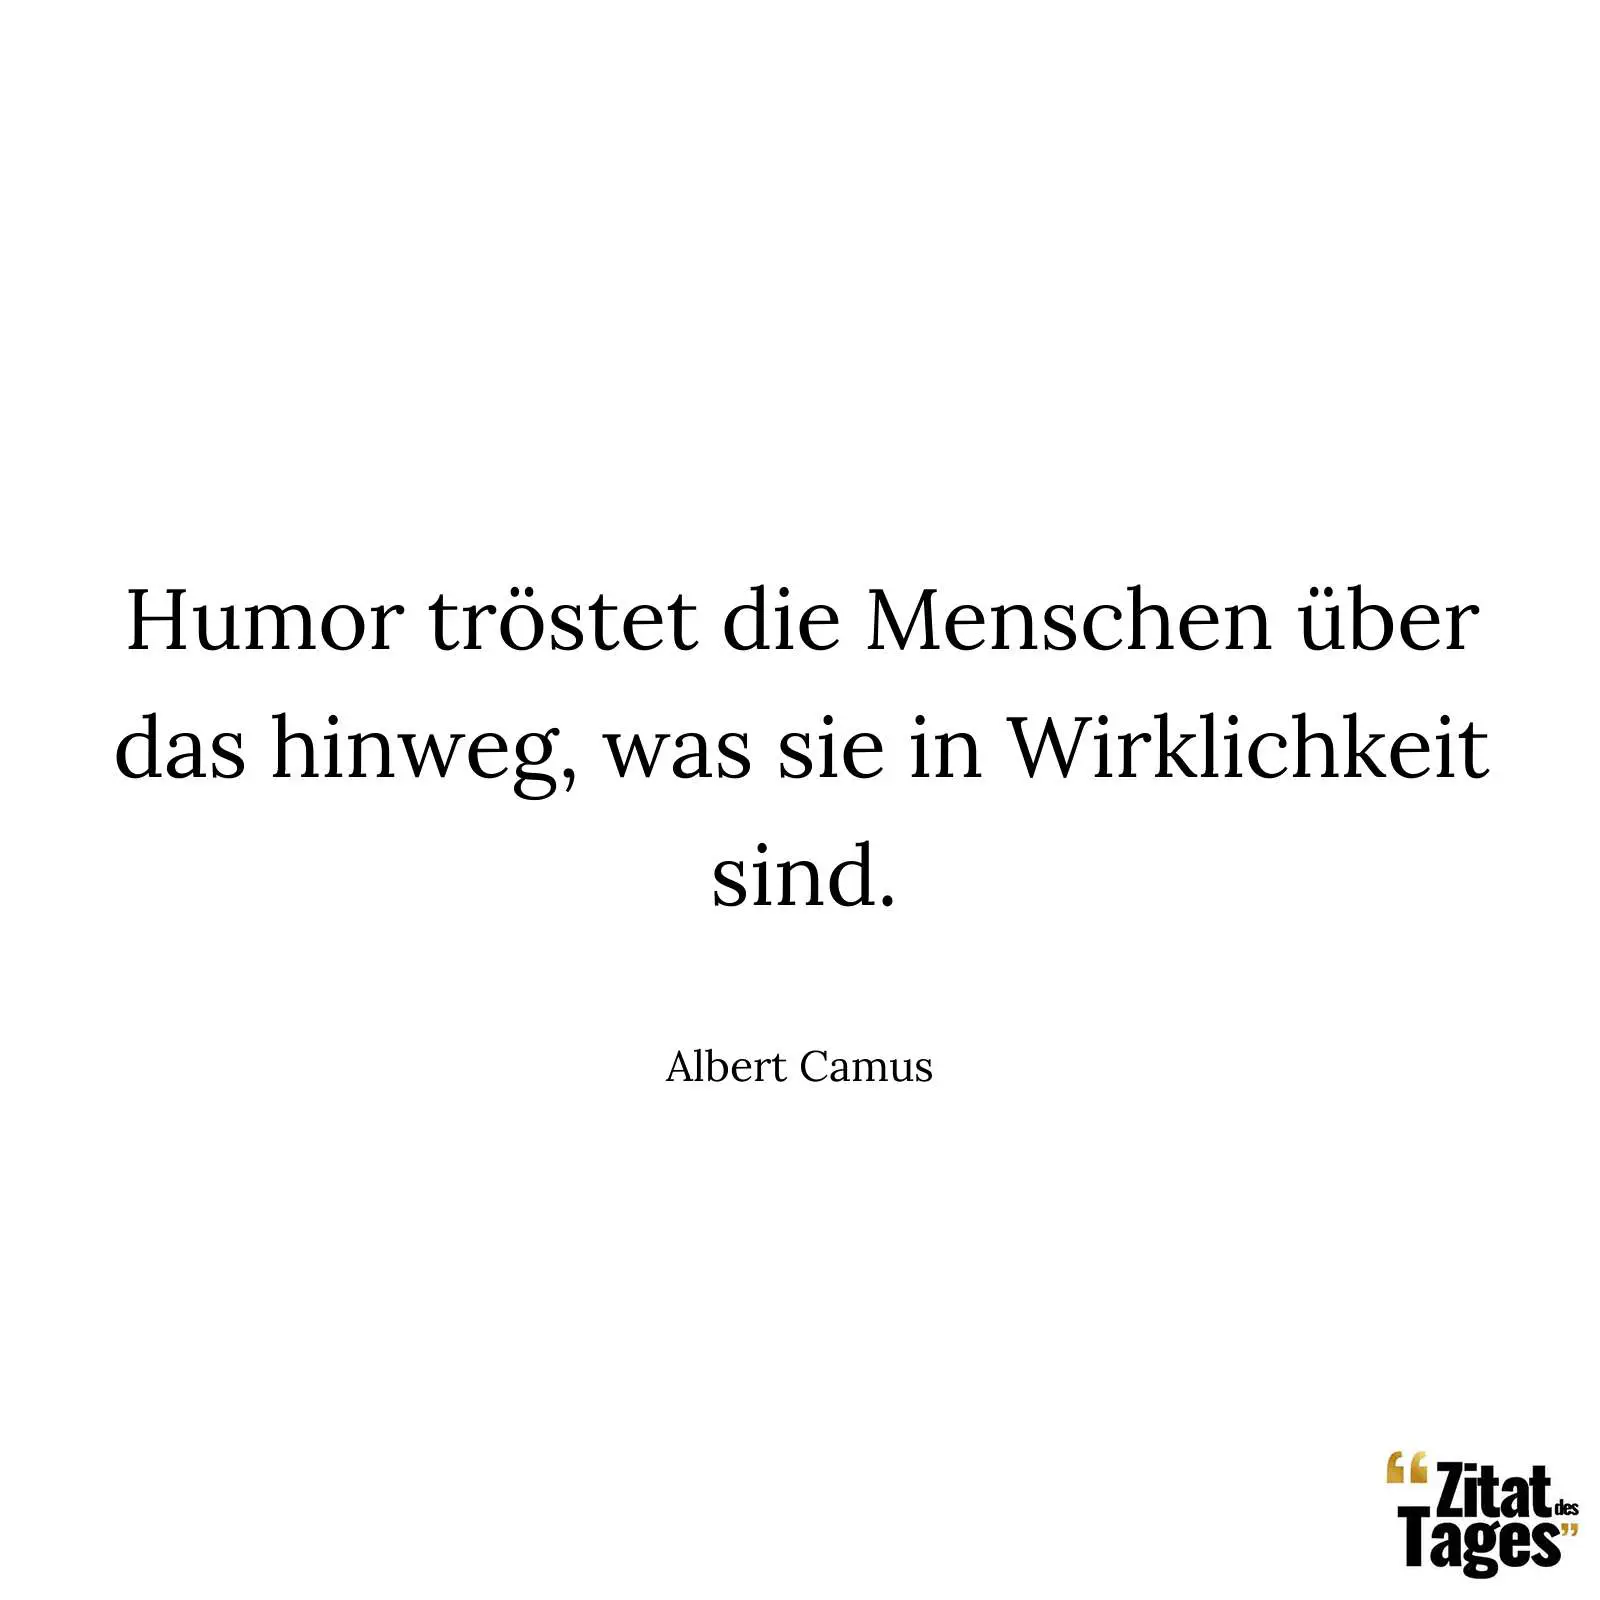 Humor tröstet die Menschen über das hinweg, was sie in Wirklichkeit sind. - Albert Camus